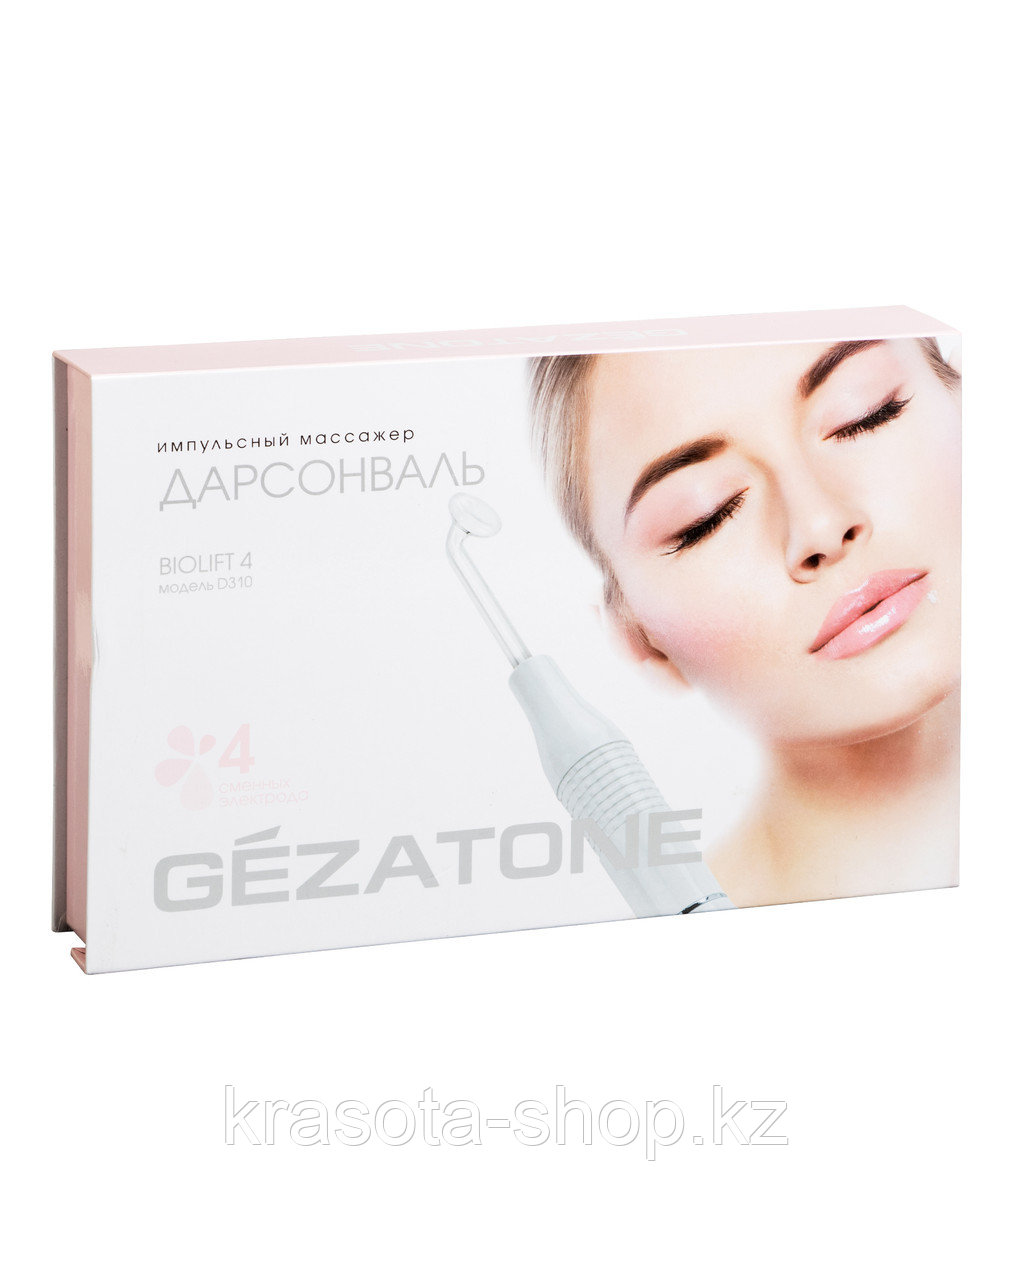 Аппарат дарсонваль для лица Gezatone Biolift4 D310 (4 насадки), фото 1